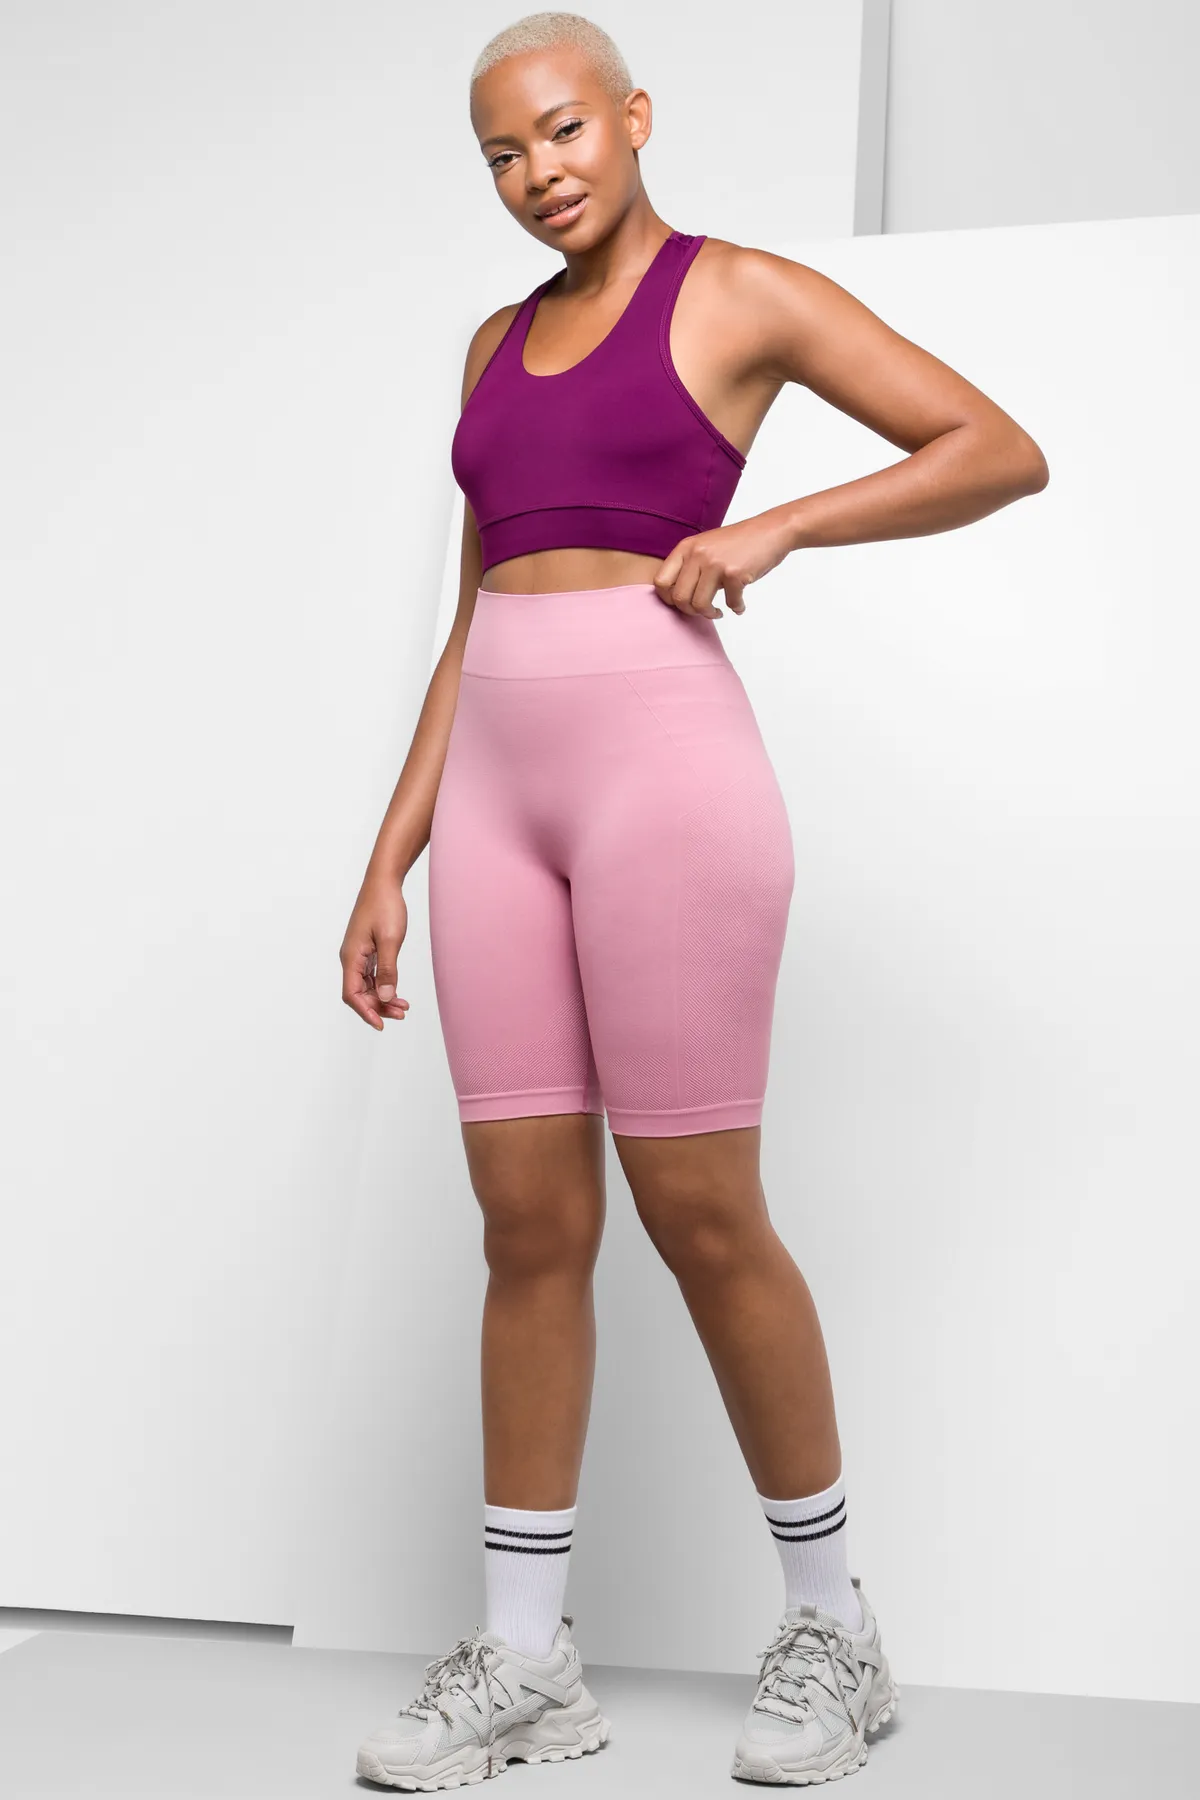 Seamfree cycle shorts pink - Women's Activewear Shorts